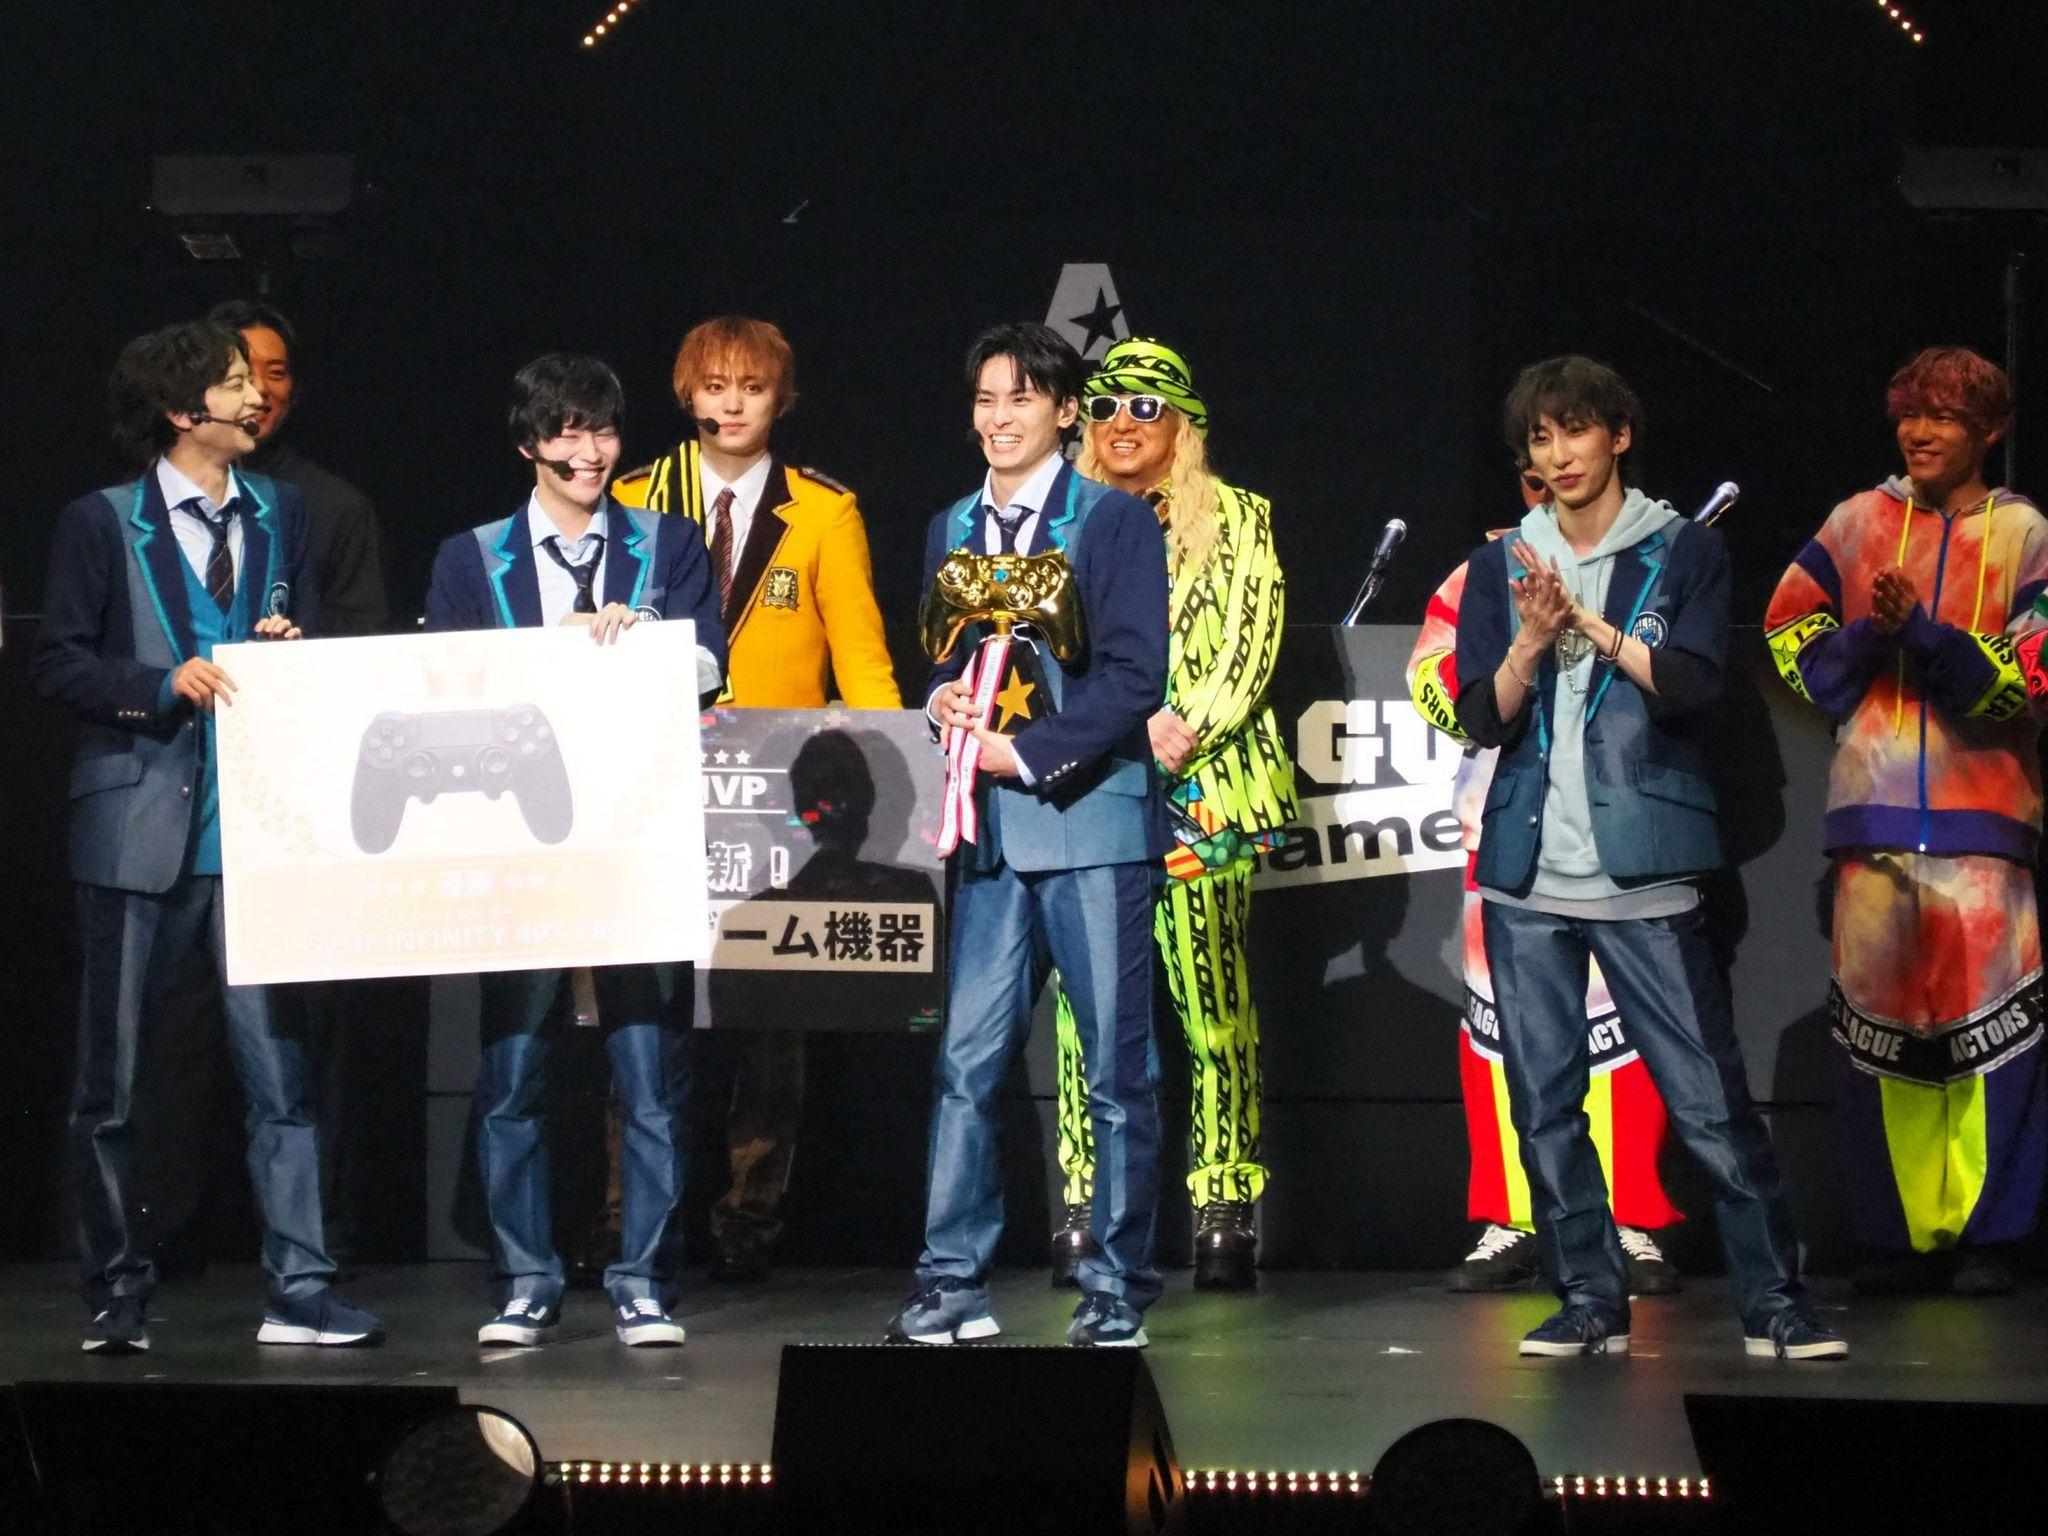 高野洸 自身プロデュースのゲームイベントで悲願の初優勝「最高の1日でした！GG（Good Game）」